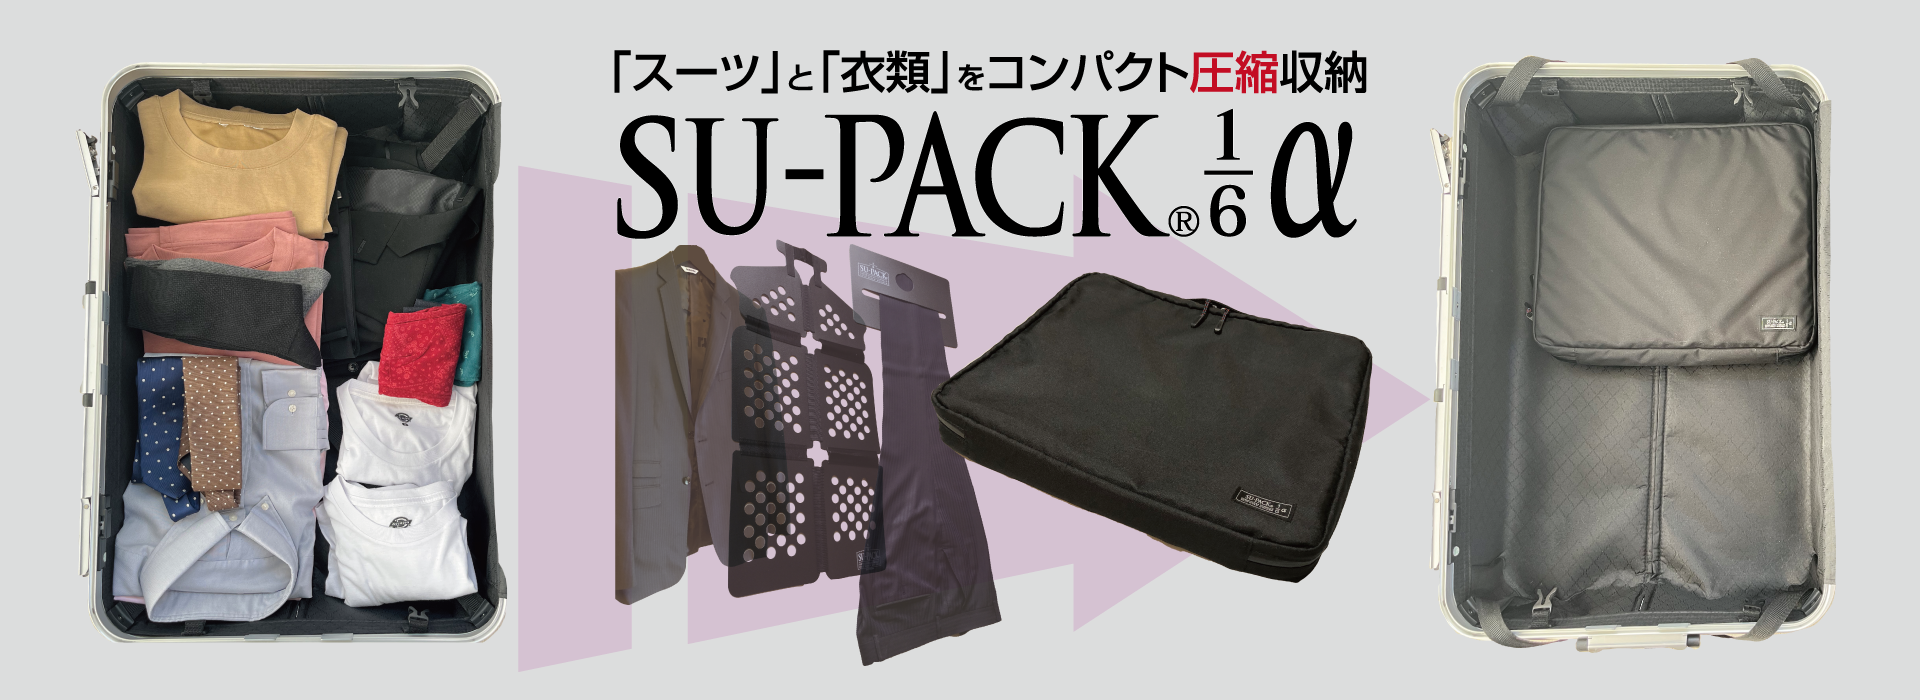 SU-PACK®1/6α 1stビュー画像 SU-PACK®1/6とスーツケース。それを使用した場合のスーツケース内のスペースの空き具合の画像